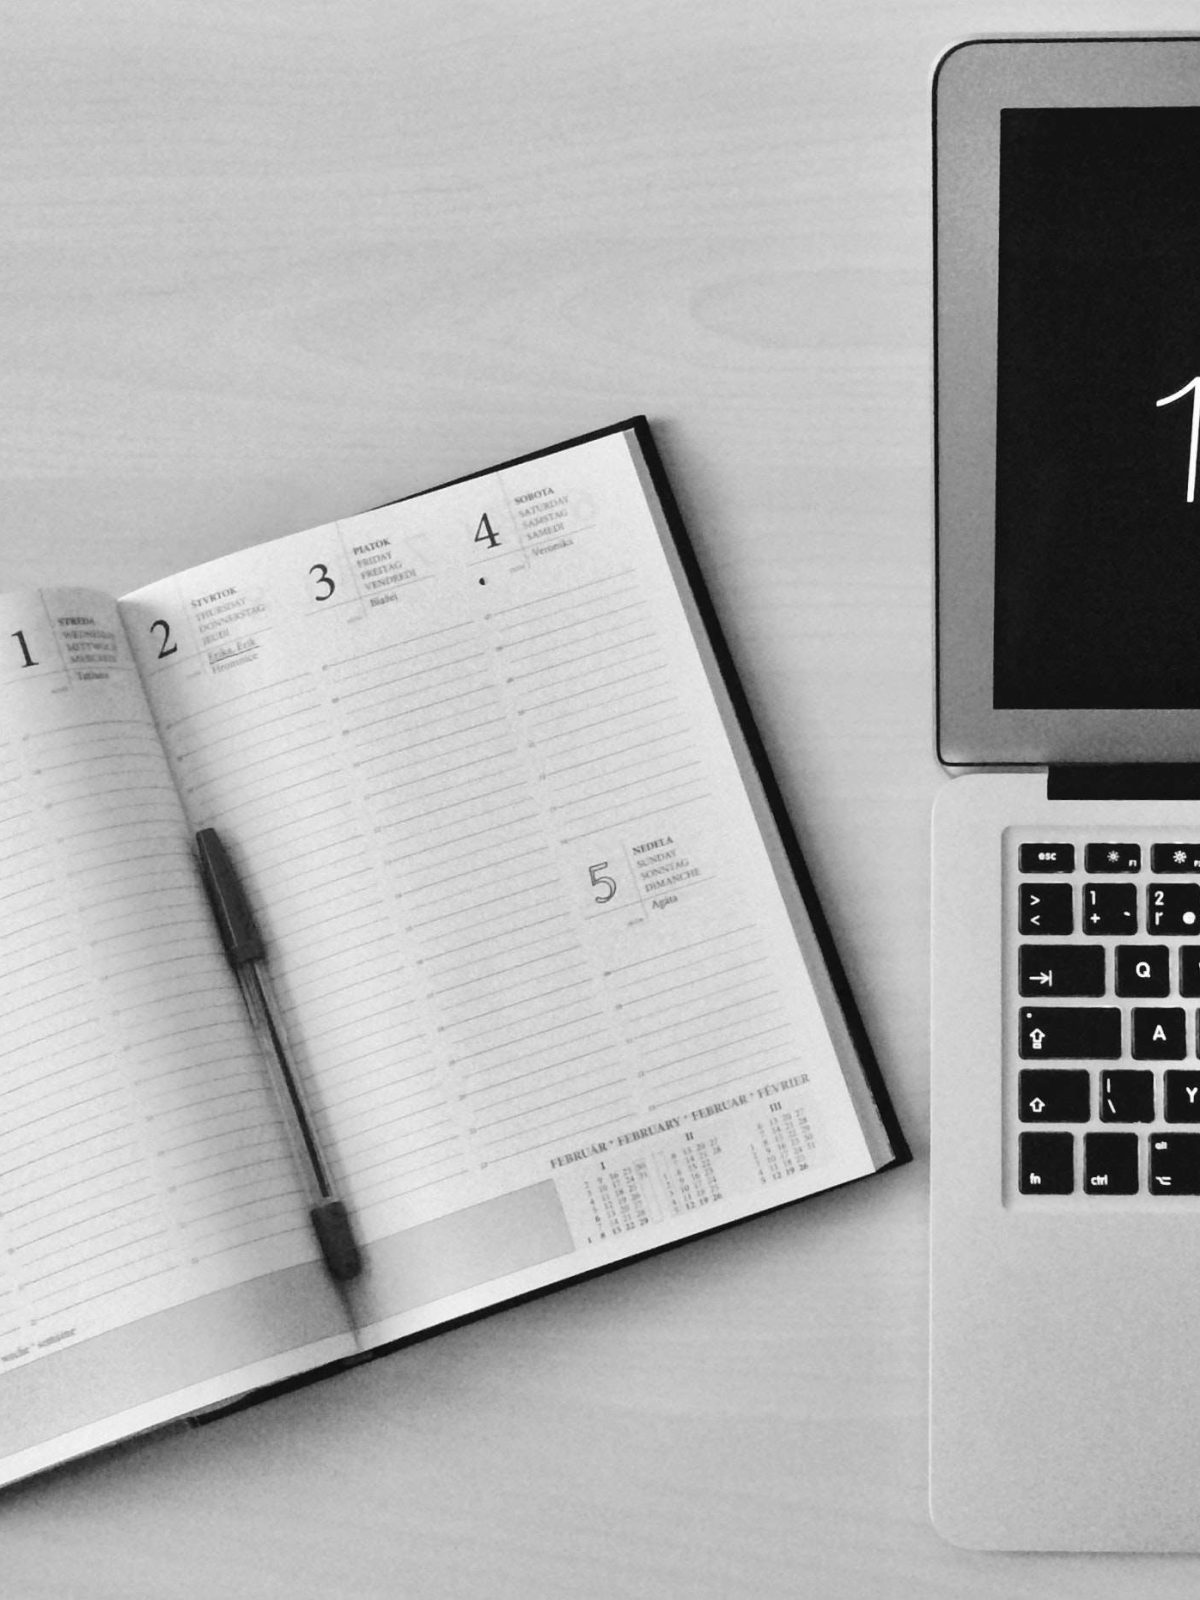 agenda calendario con portátil para ejecutar una estrategia para organizar el blog